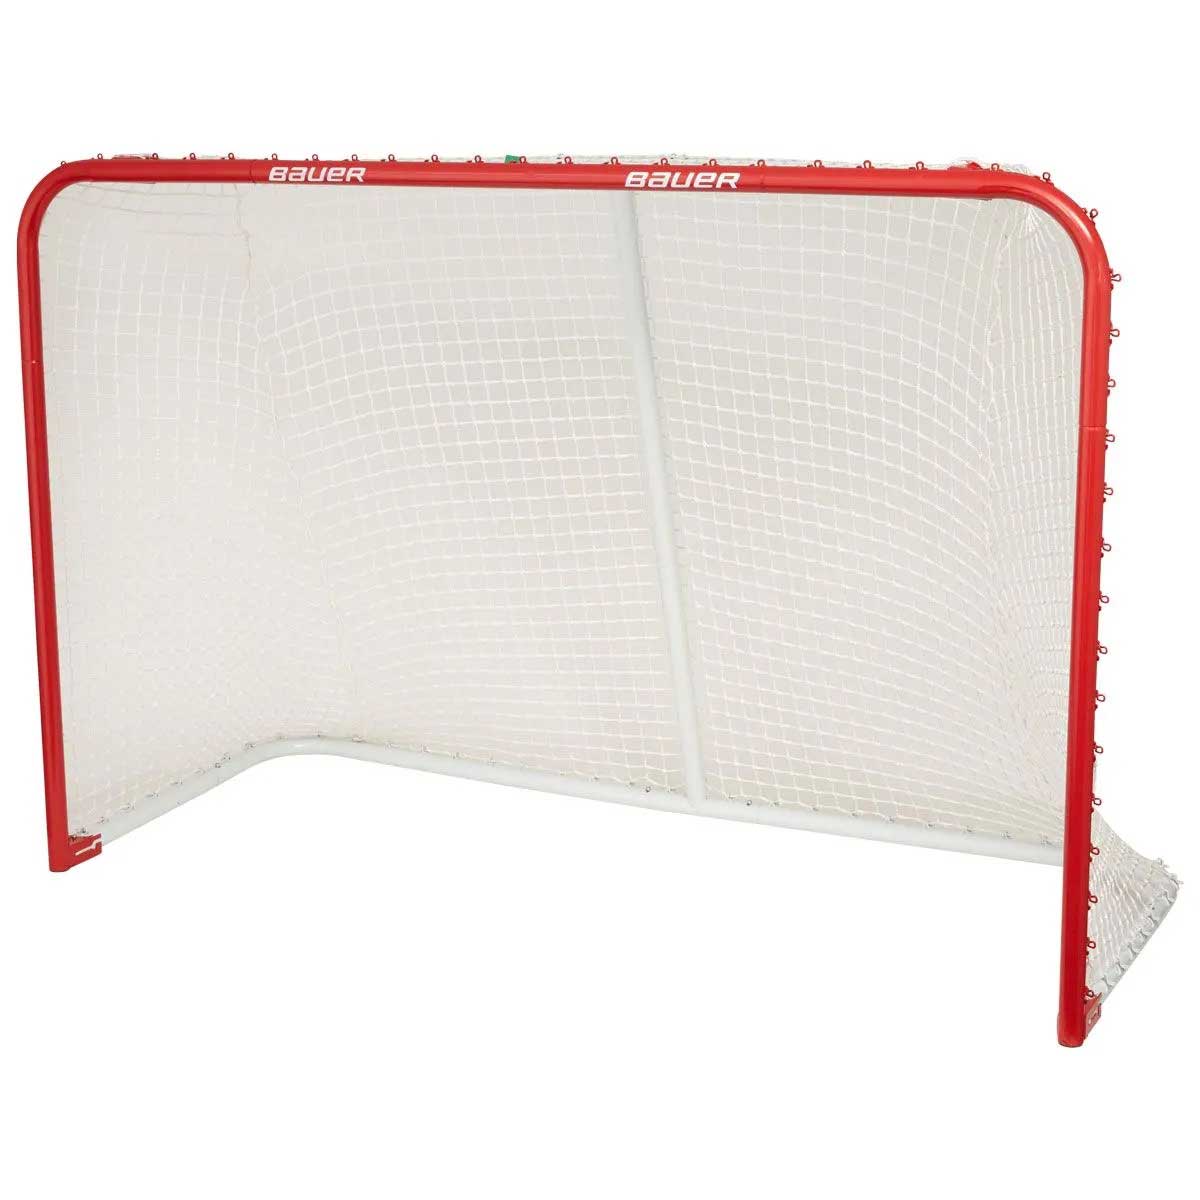 Bauer Deluxe Performance 72in. Folding Steel Hockey Goal Net